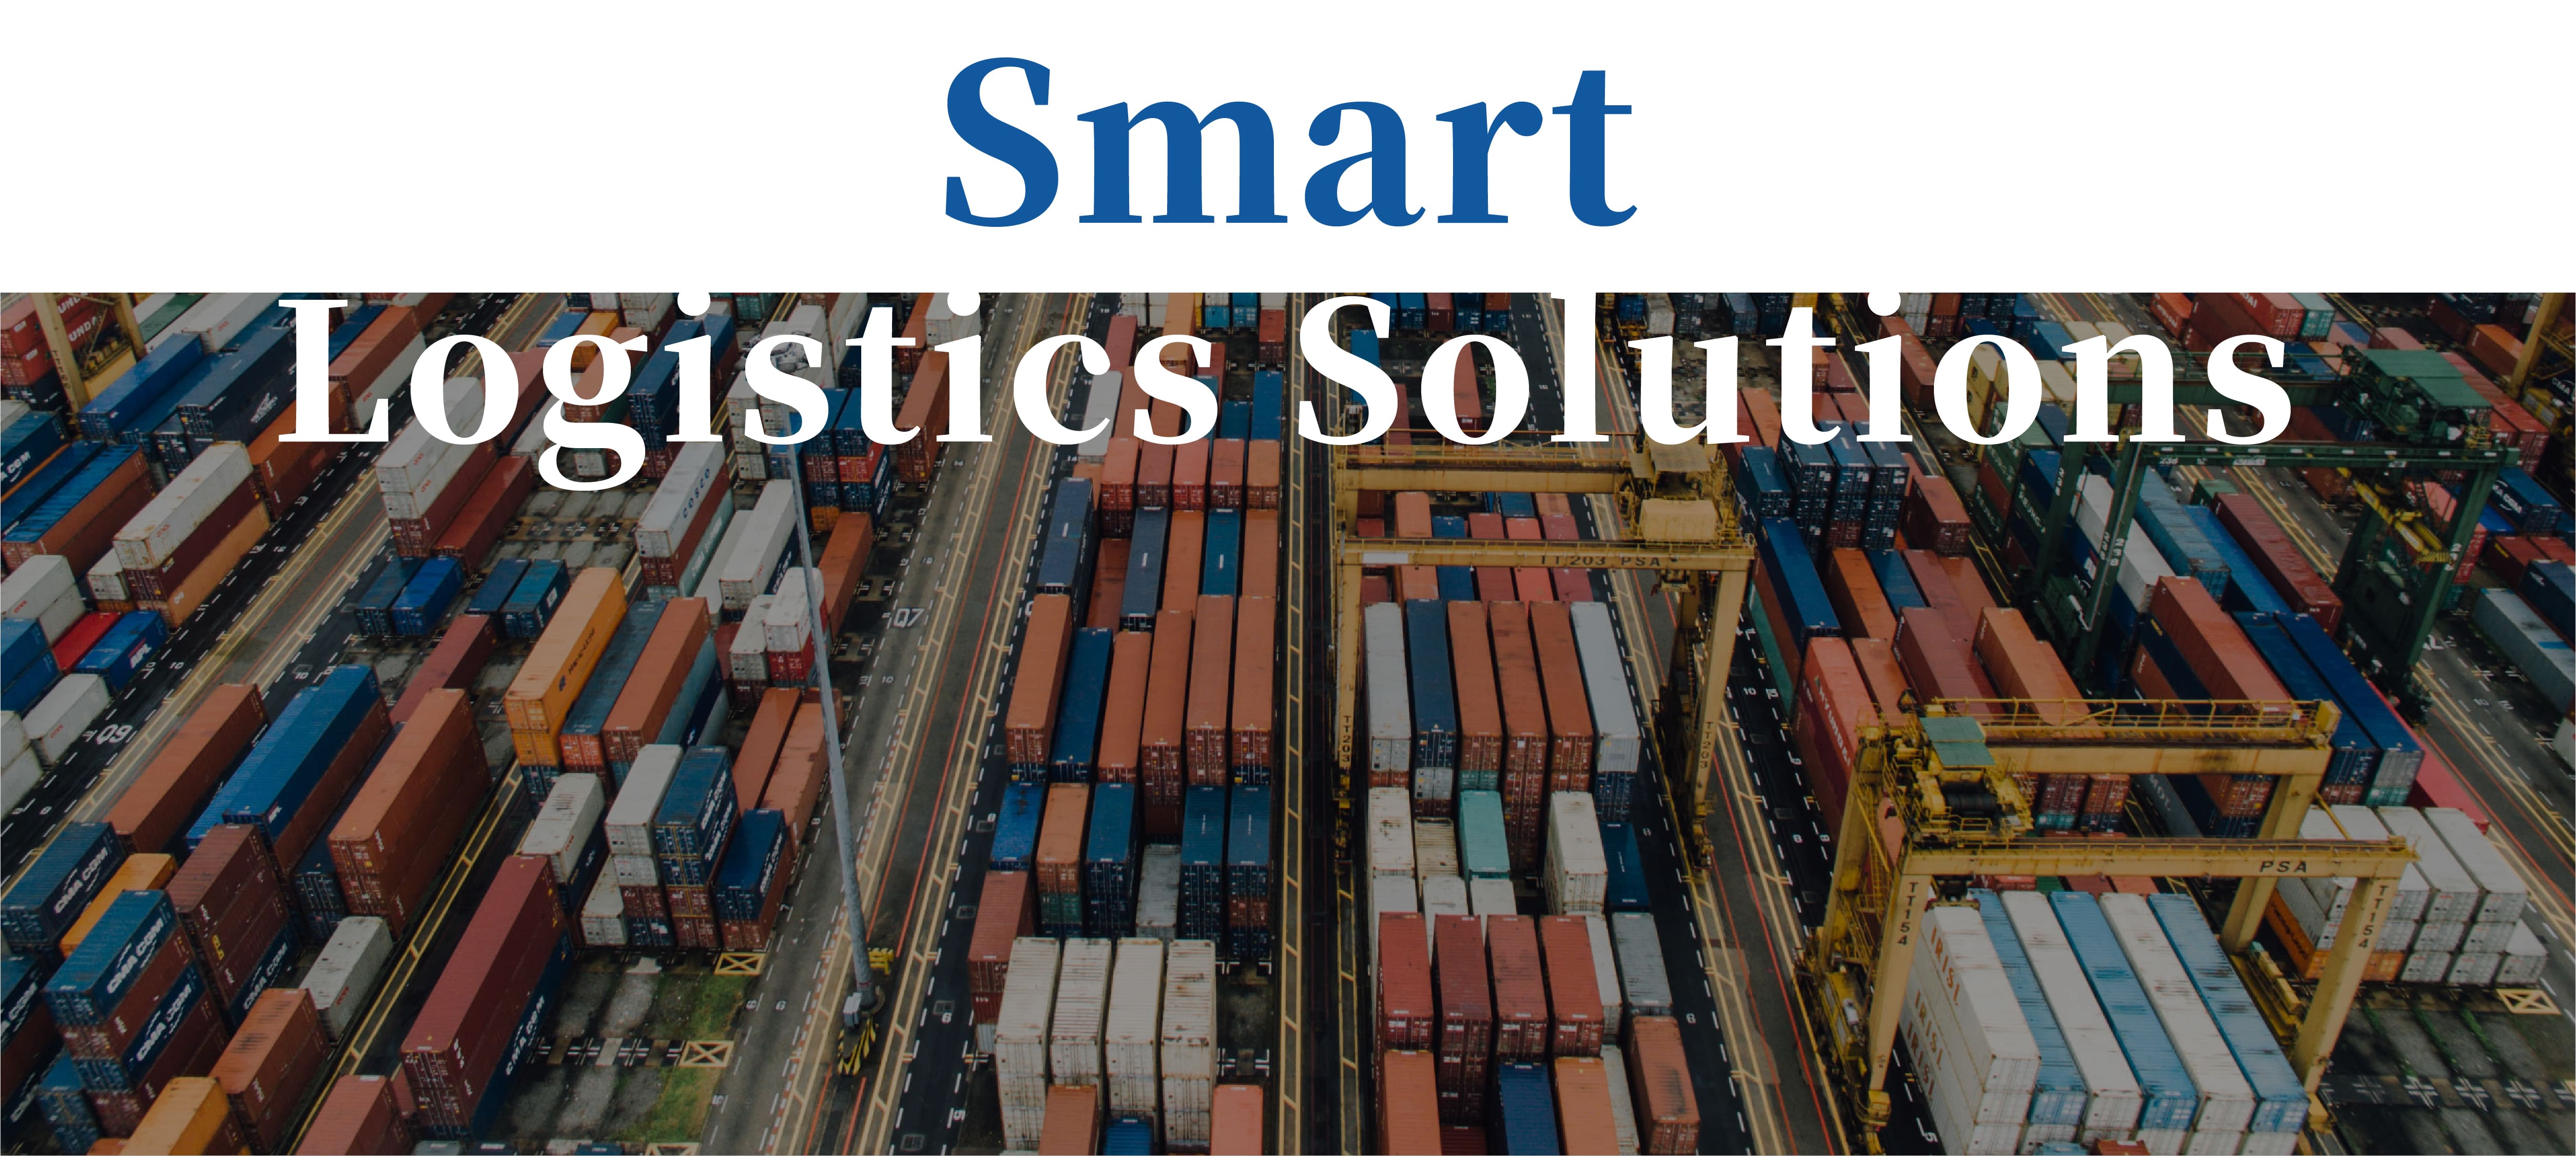 Smart Logistics Solutions